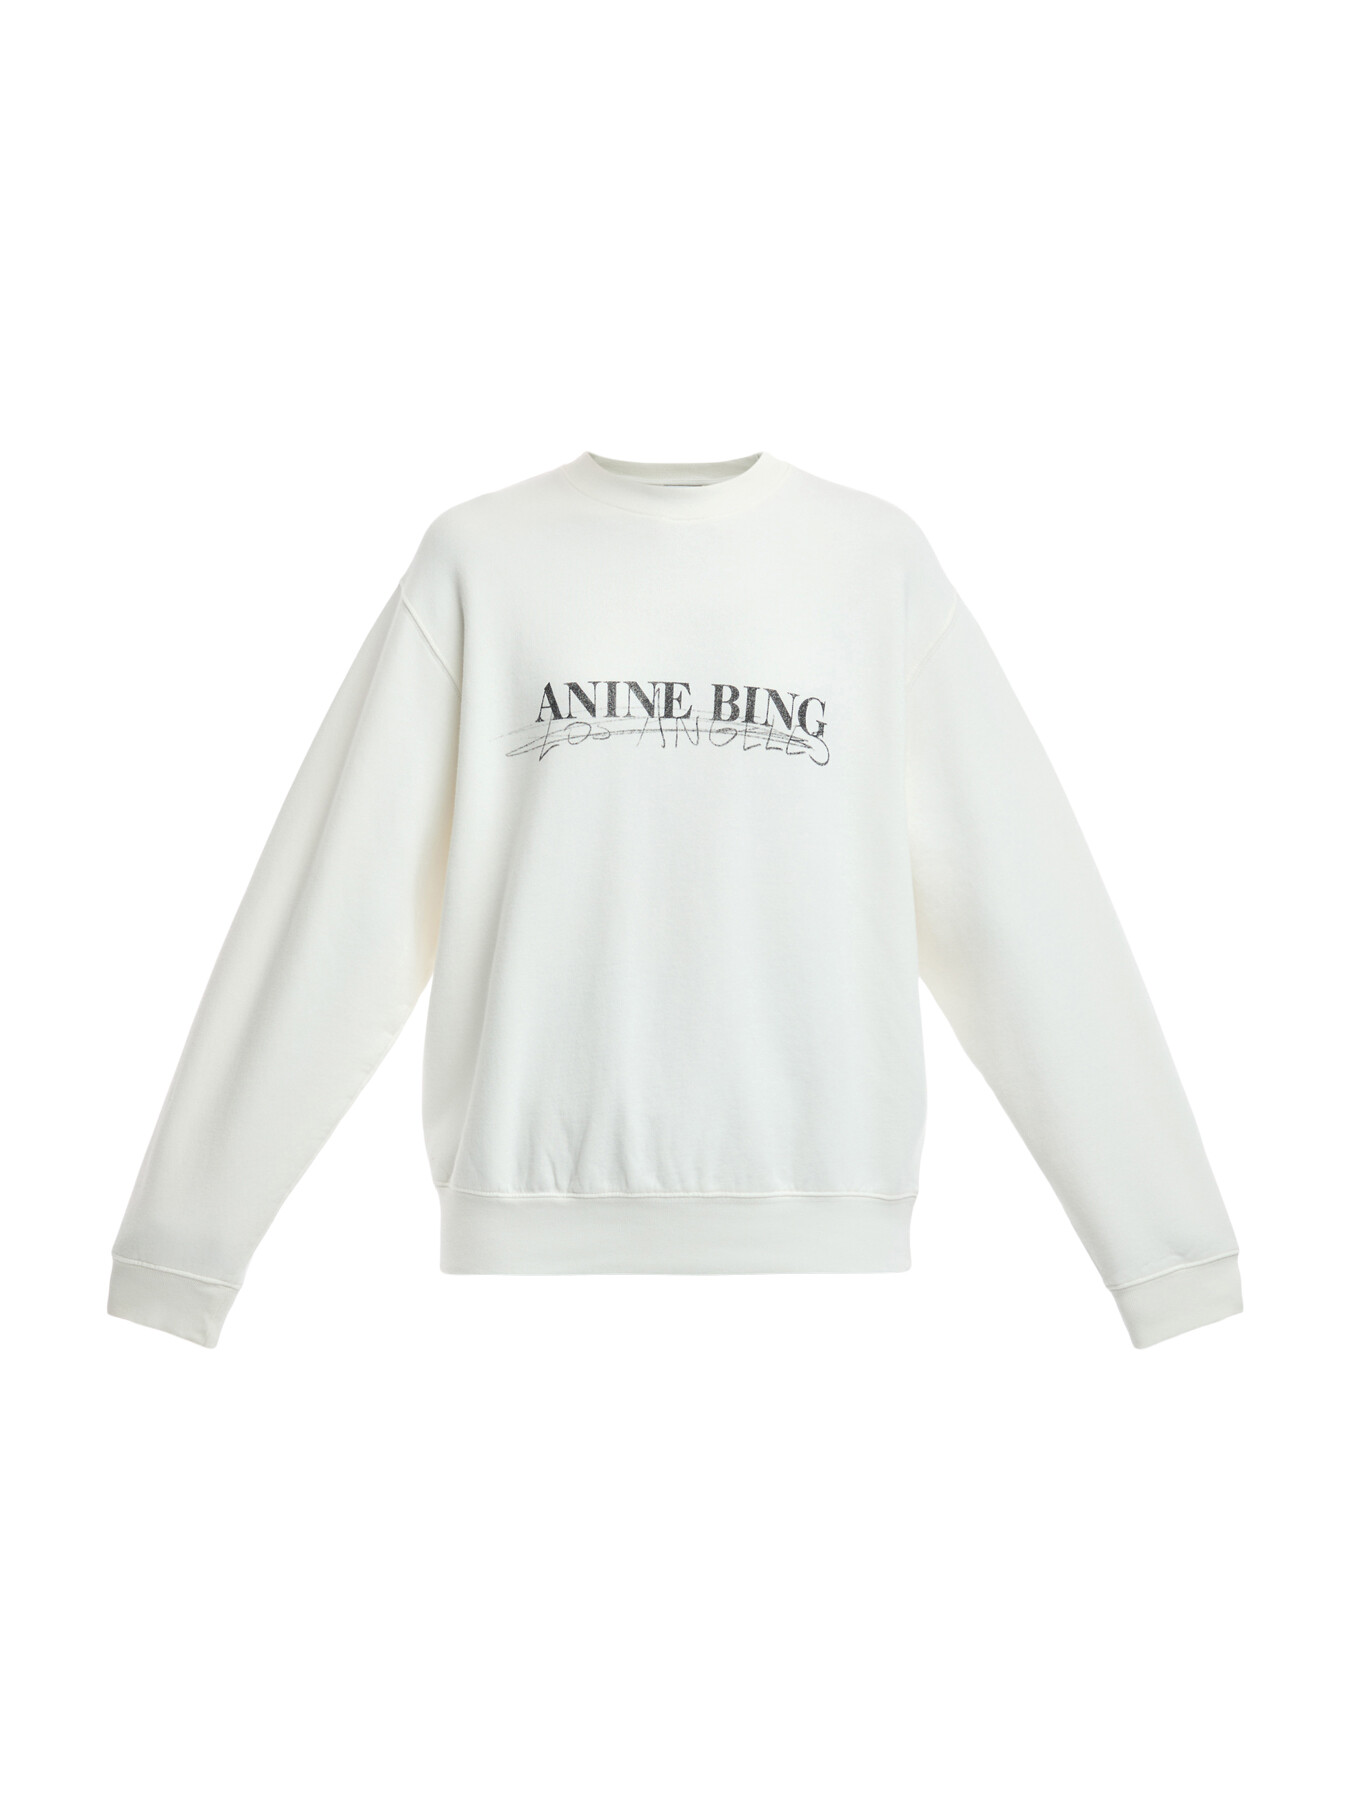 Anine Bing Women's Ramona Sweatshirt Doodle White